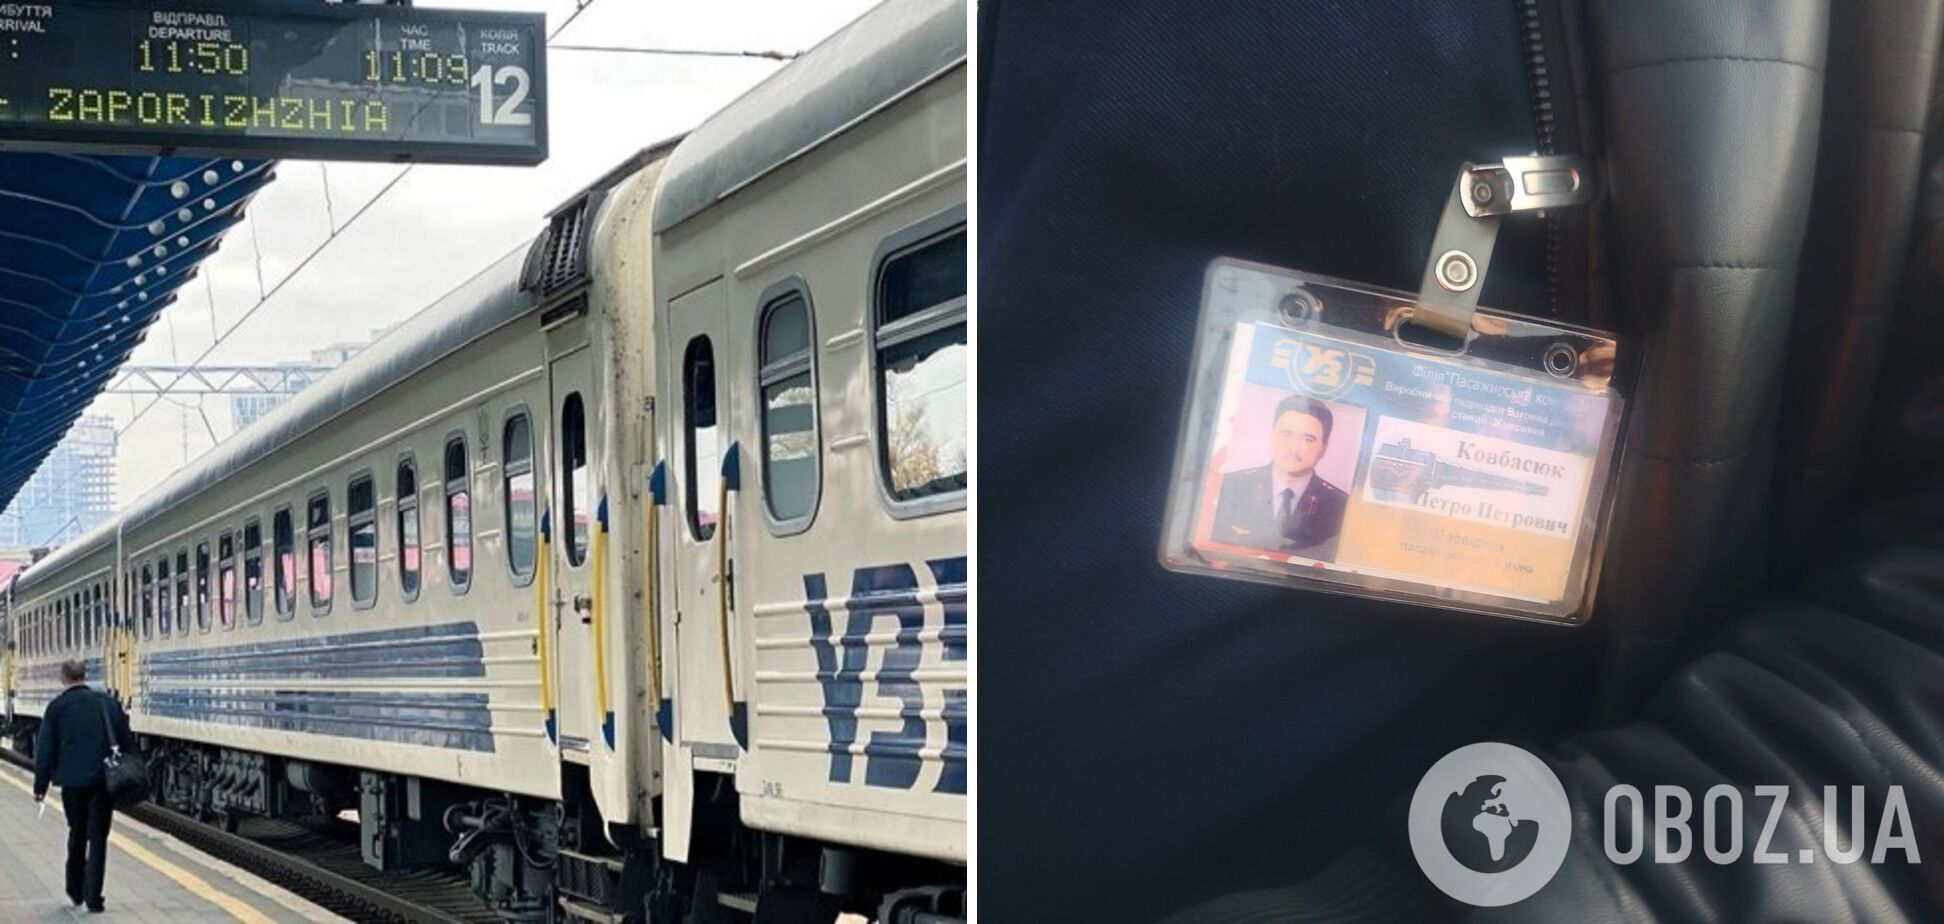 Во Львове проводник не впускал в поезд военнослужащую, пока первым не зайдет мужчина: разгорелся скандал, в УЗ отреагировали